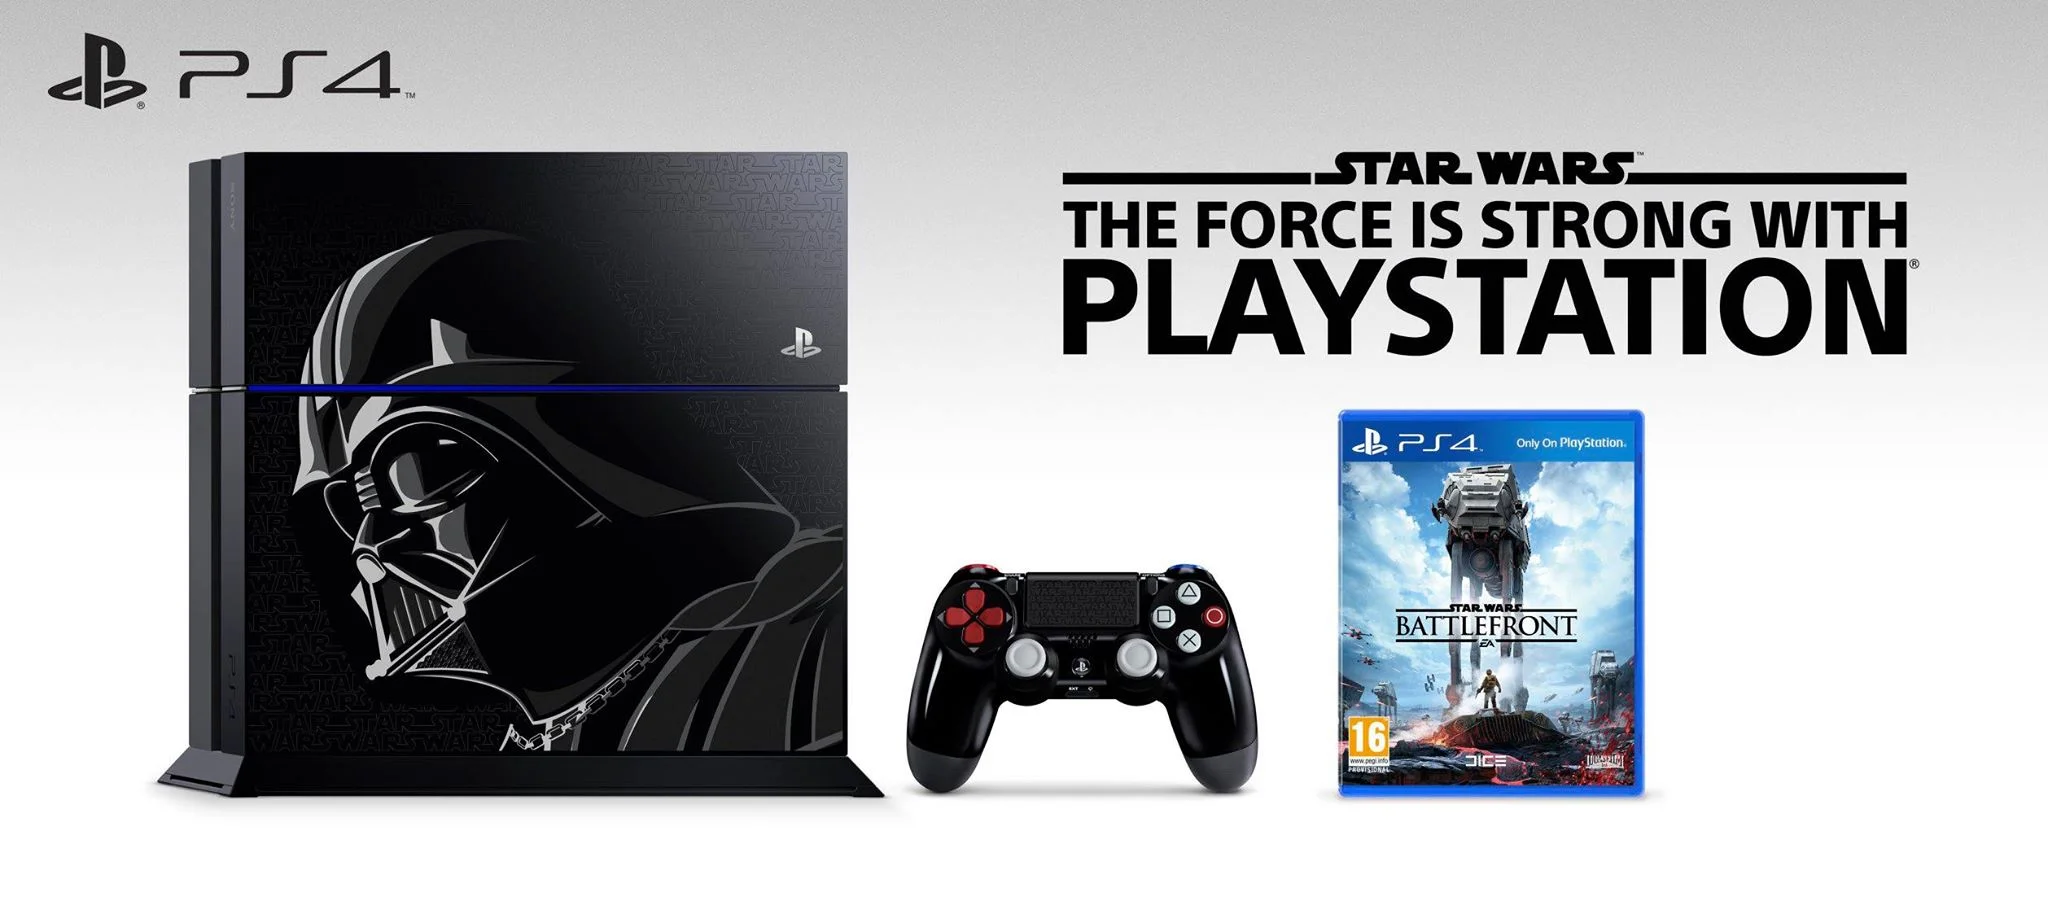 Дарт Вейдер стал лицом лимитированного SW Battlefront PS4 Bundle - фото 1